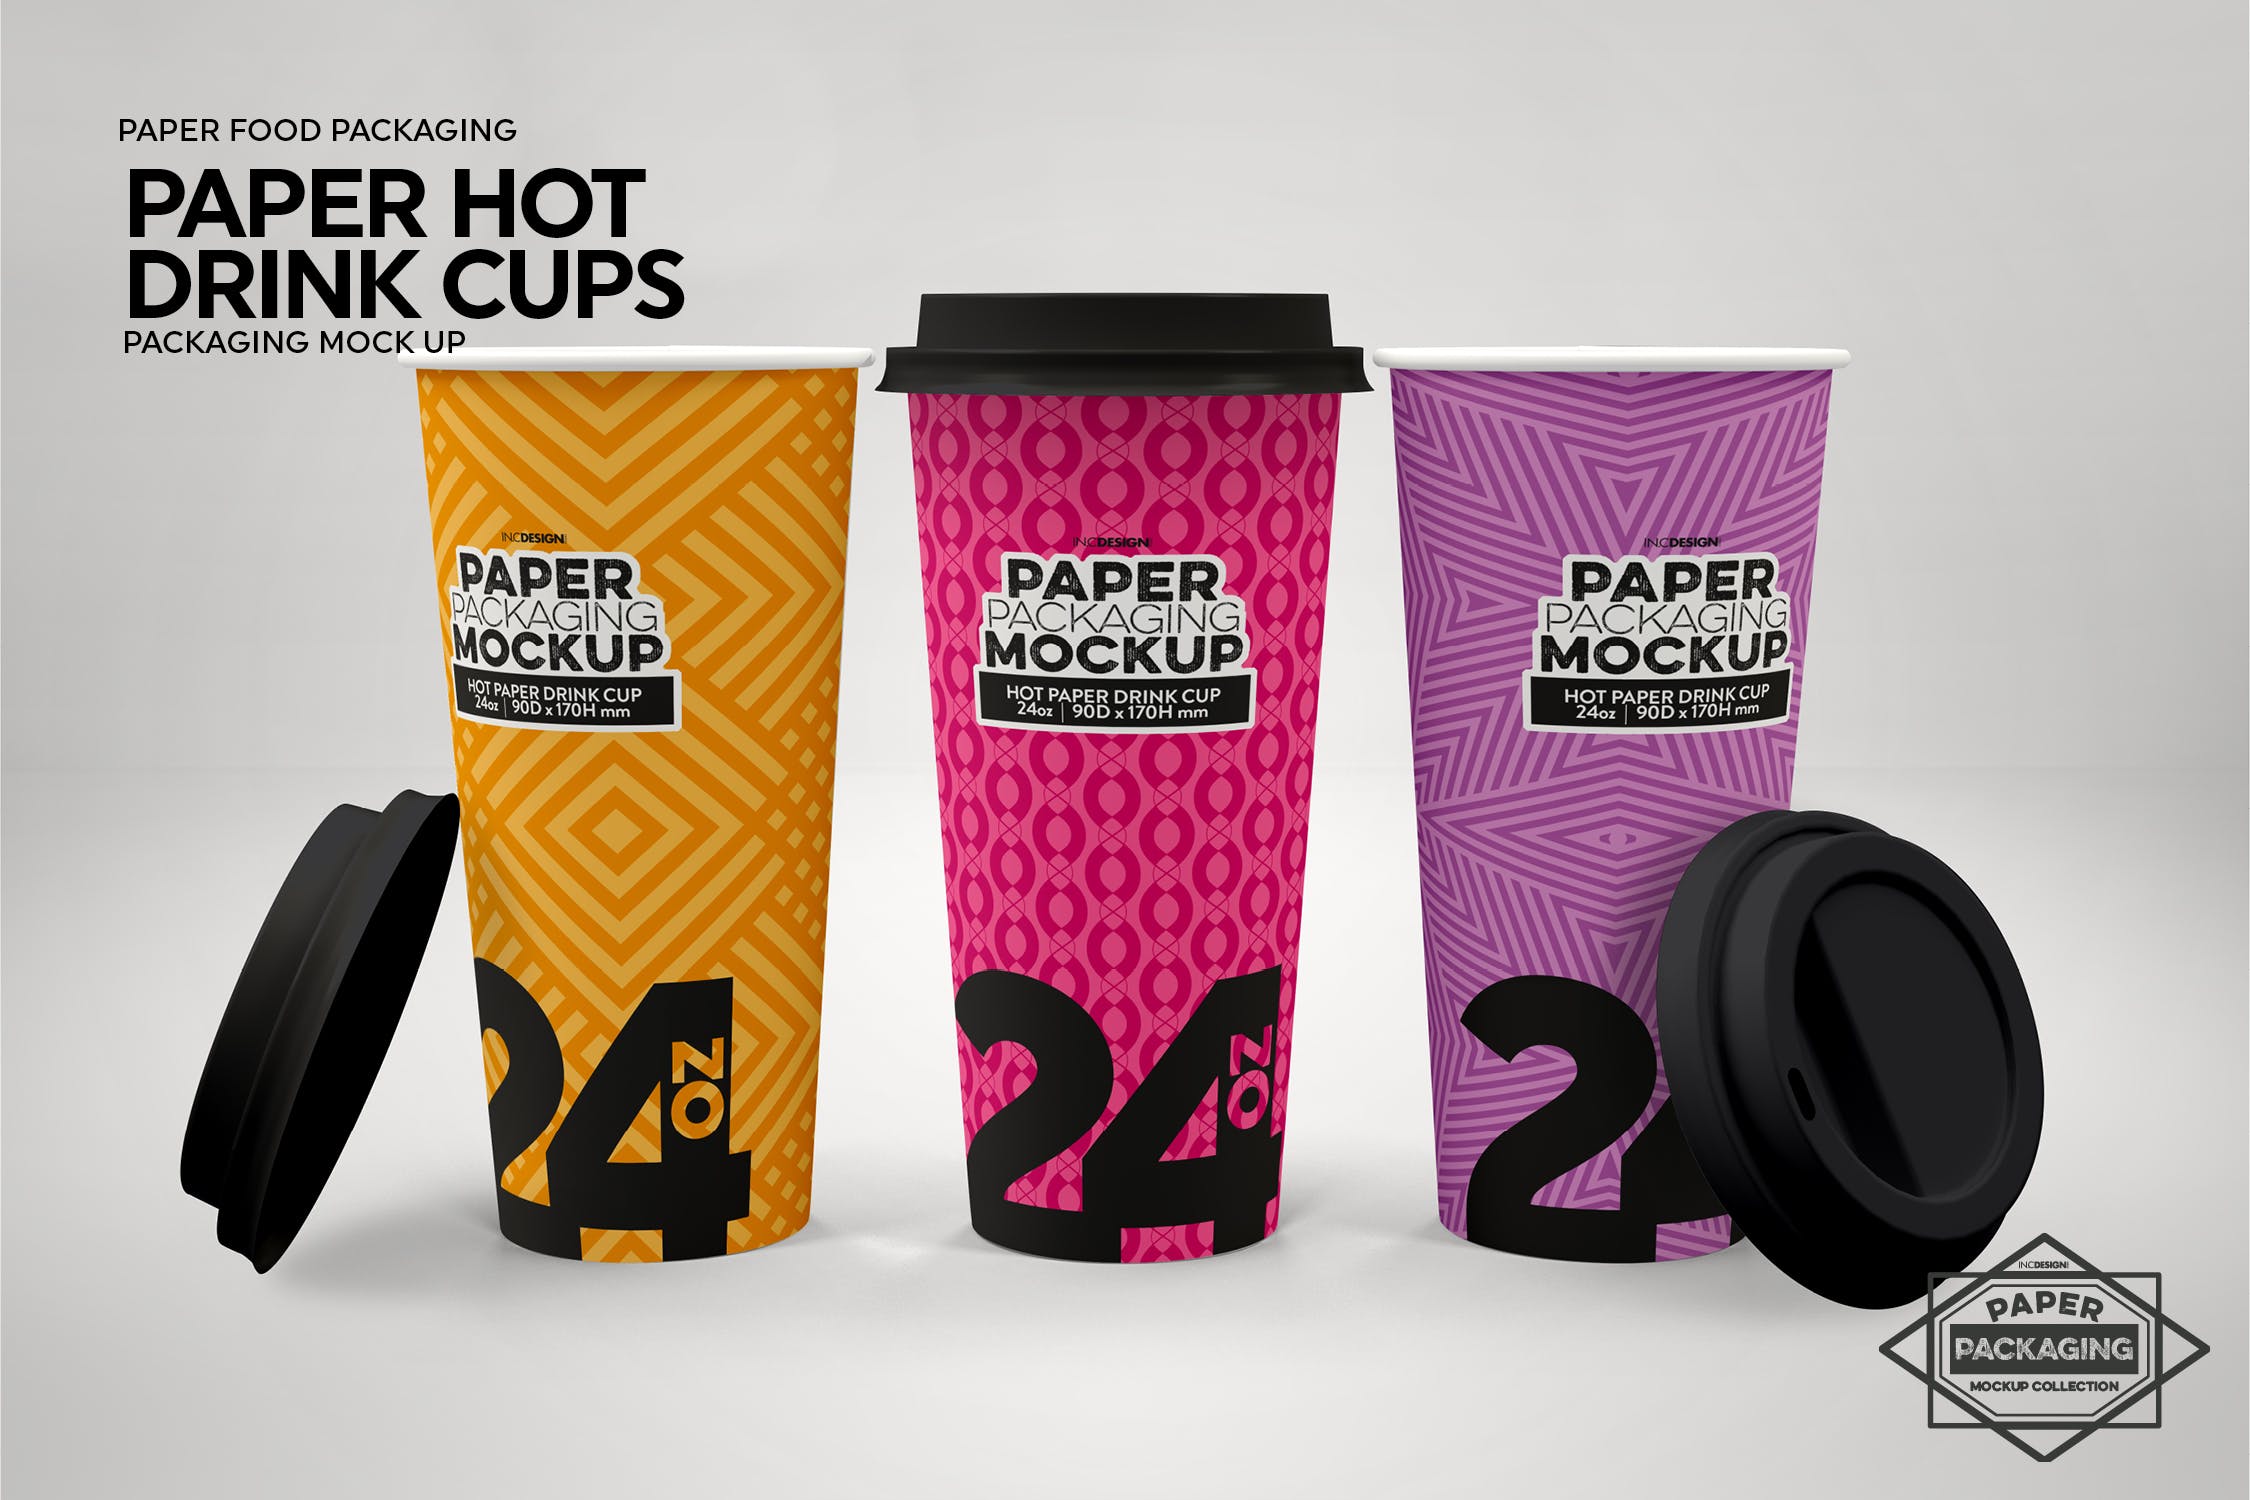 热饮一次性纸杯外观设计第一素材精选 Paper Hot Drink Cups Packaging Mockup插图(4)